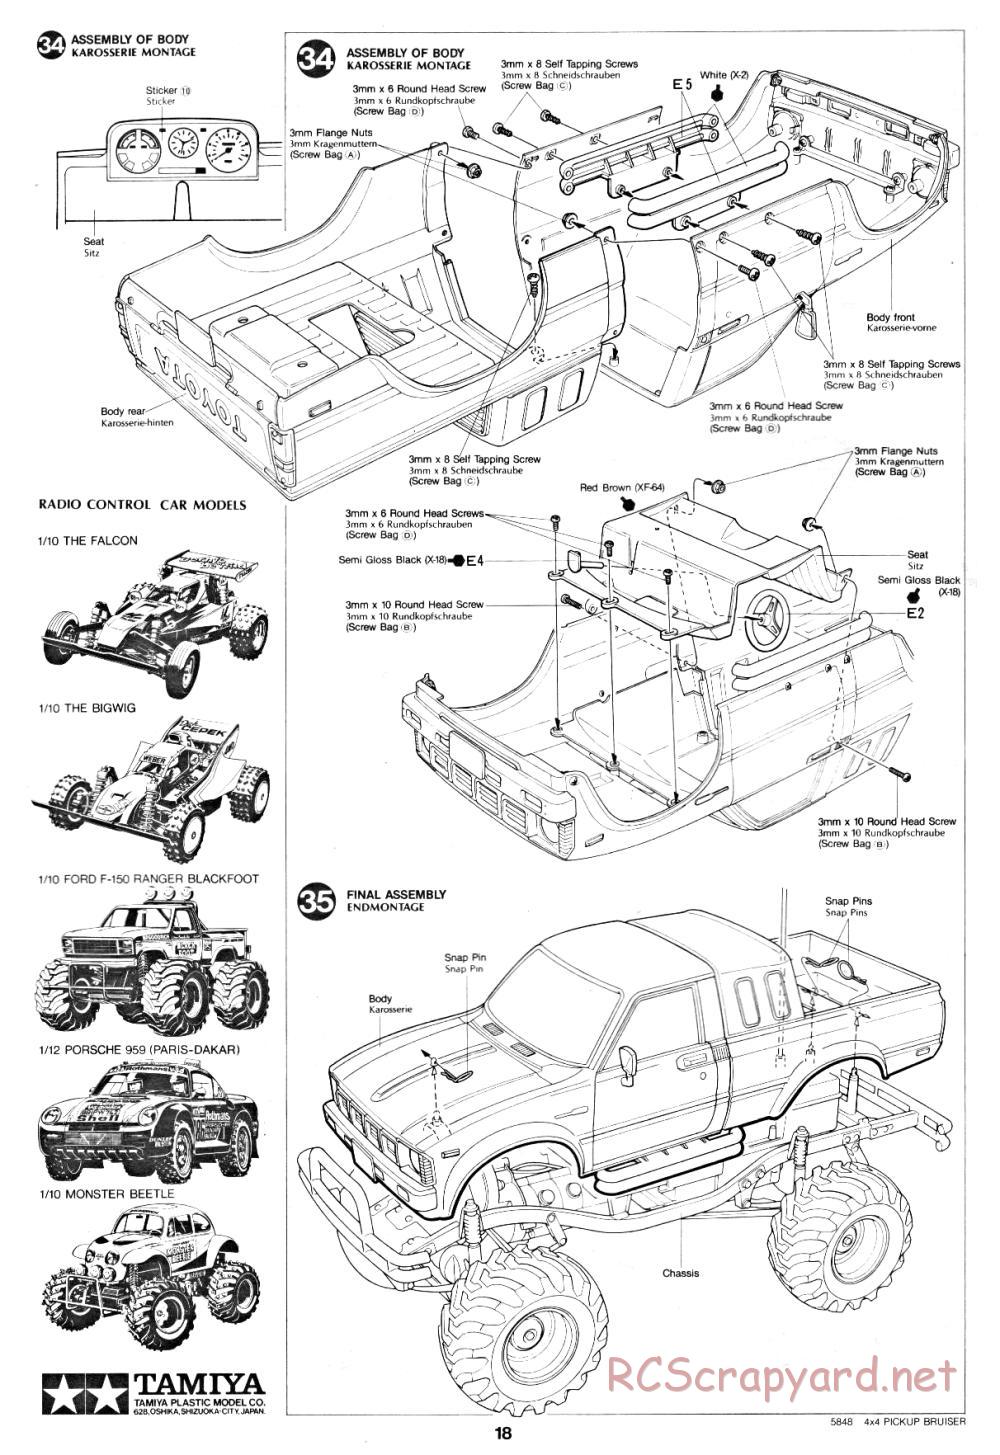 Tamiya - Toyota 4x4 Pick-Up Bruiser - 58048 - Manual - Page 18